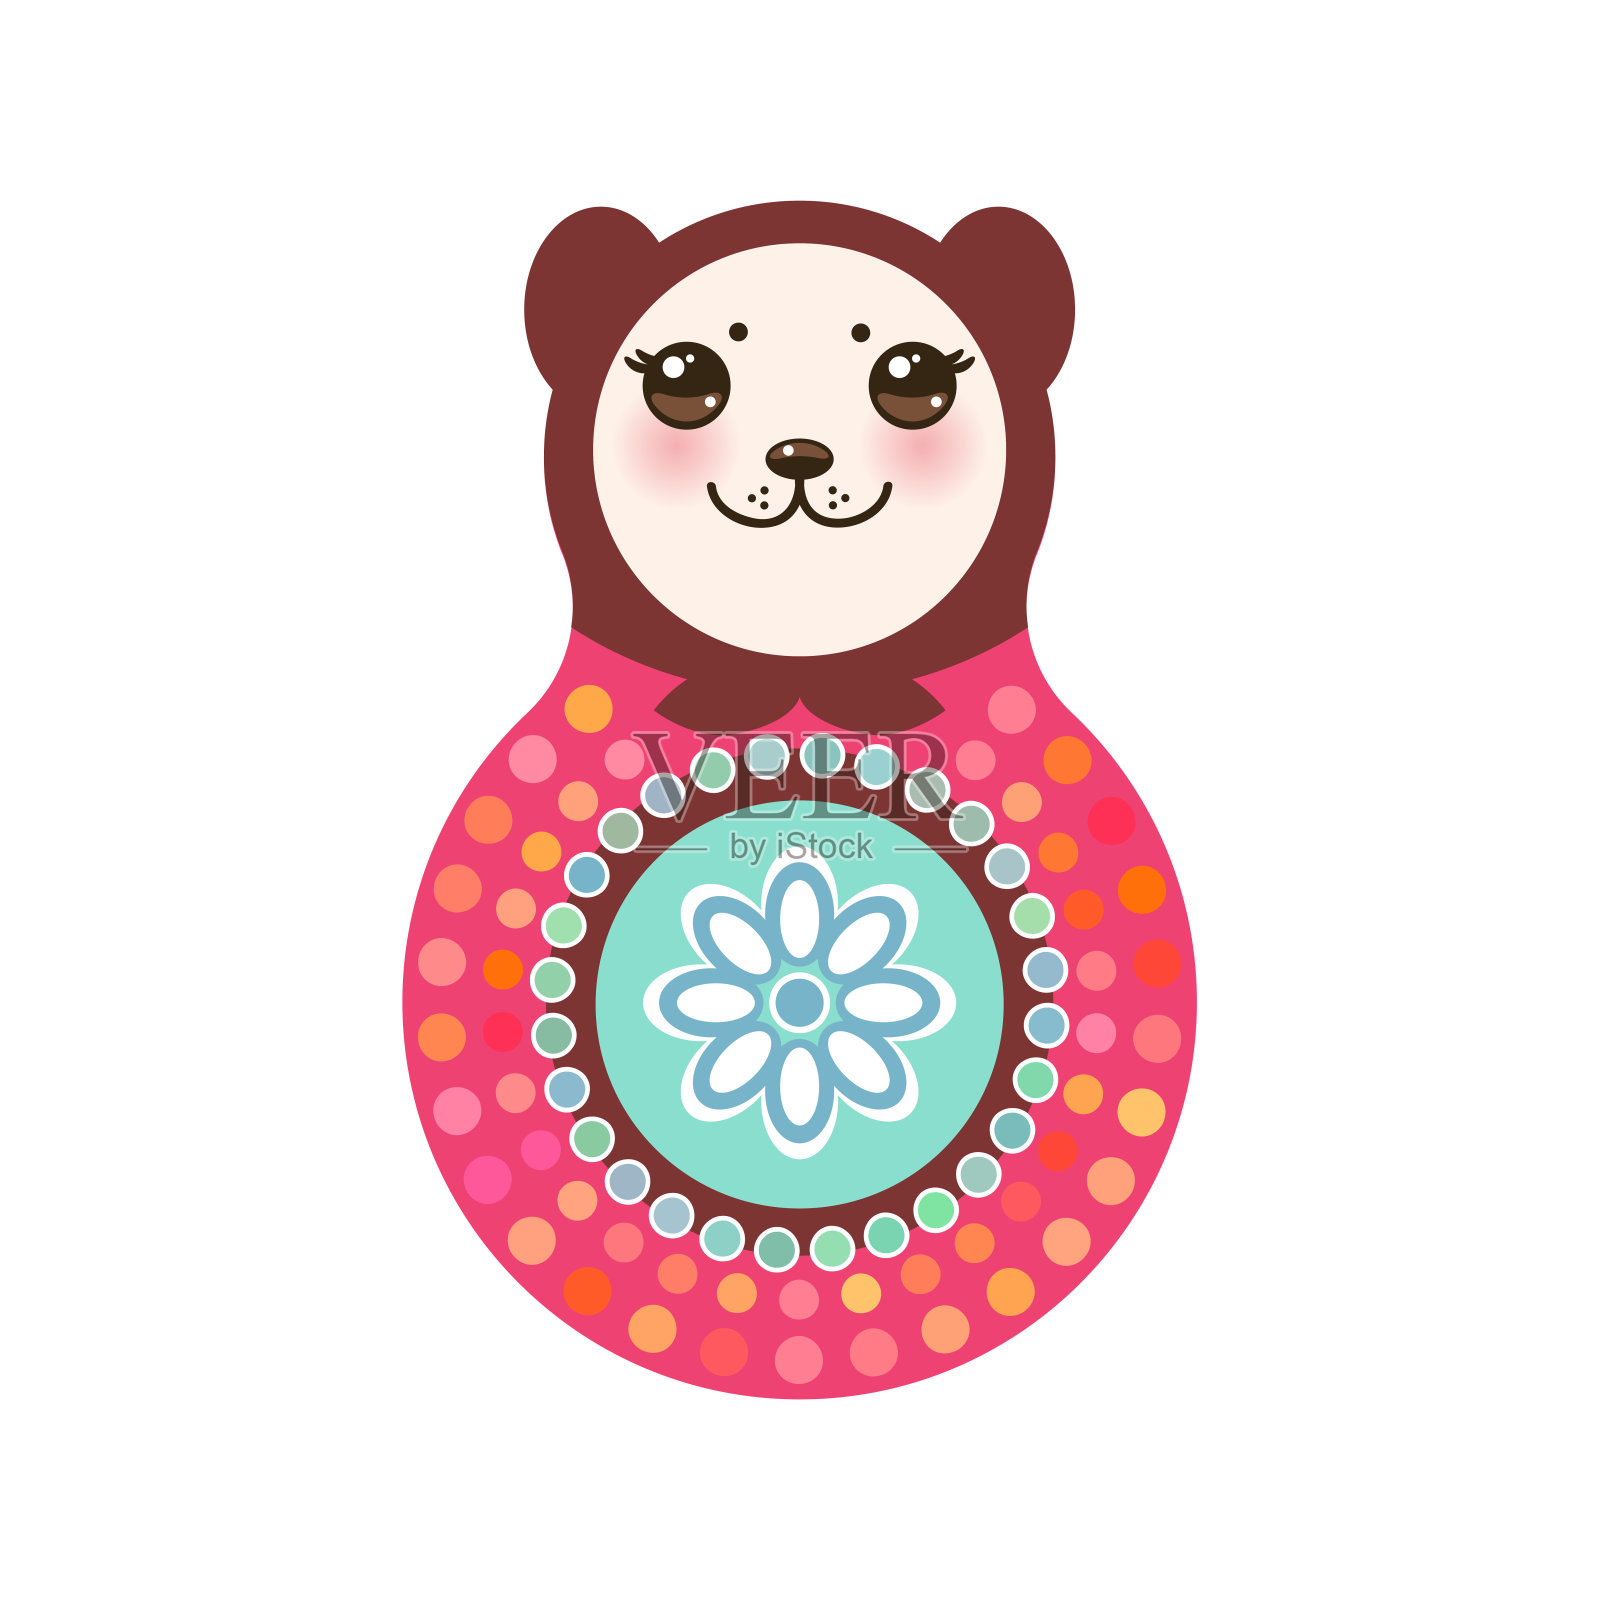 白色背景，粉红色和蓝色的俄罗斯套娃熊。向量插画图片素材